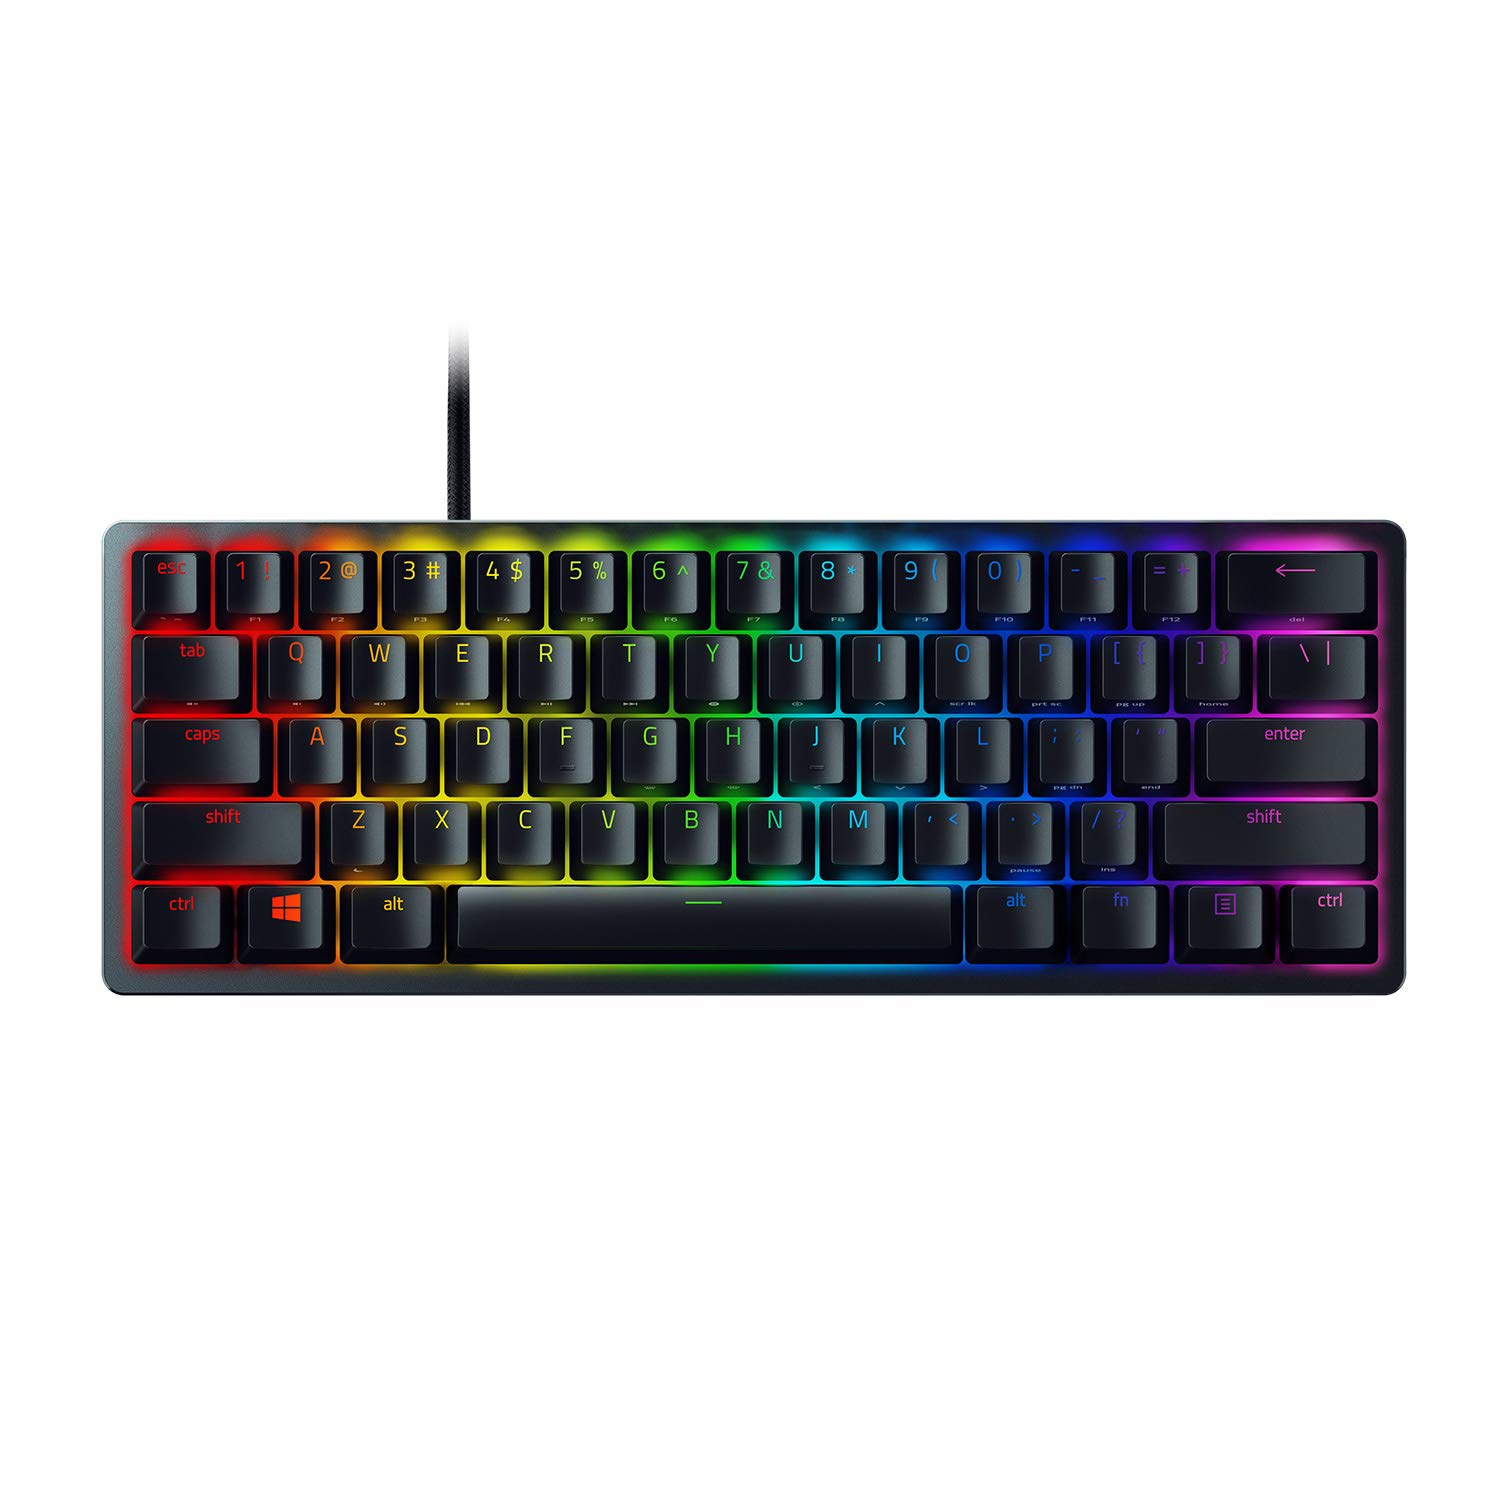 Razer Huntsman Mini Optical Gaming Keyboard / Optical / US